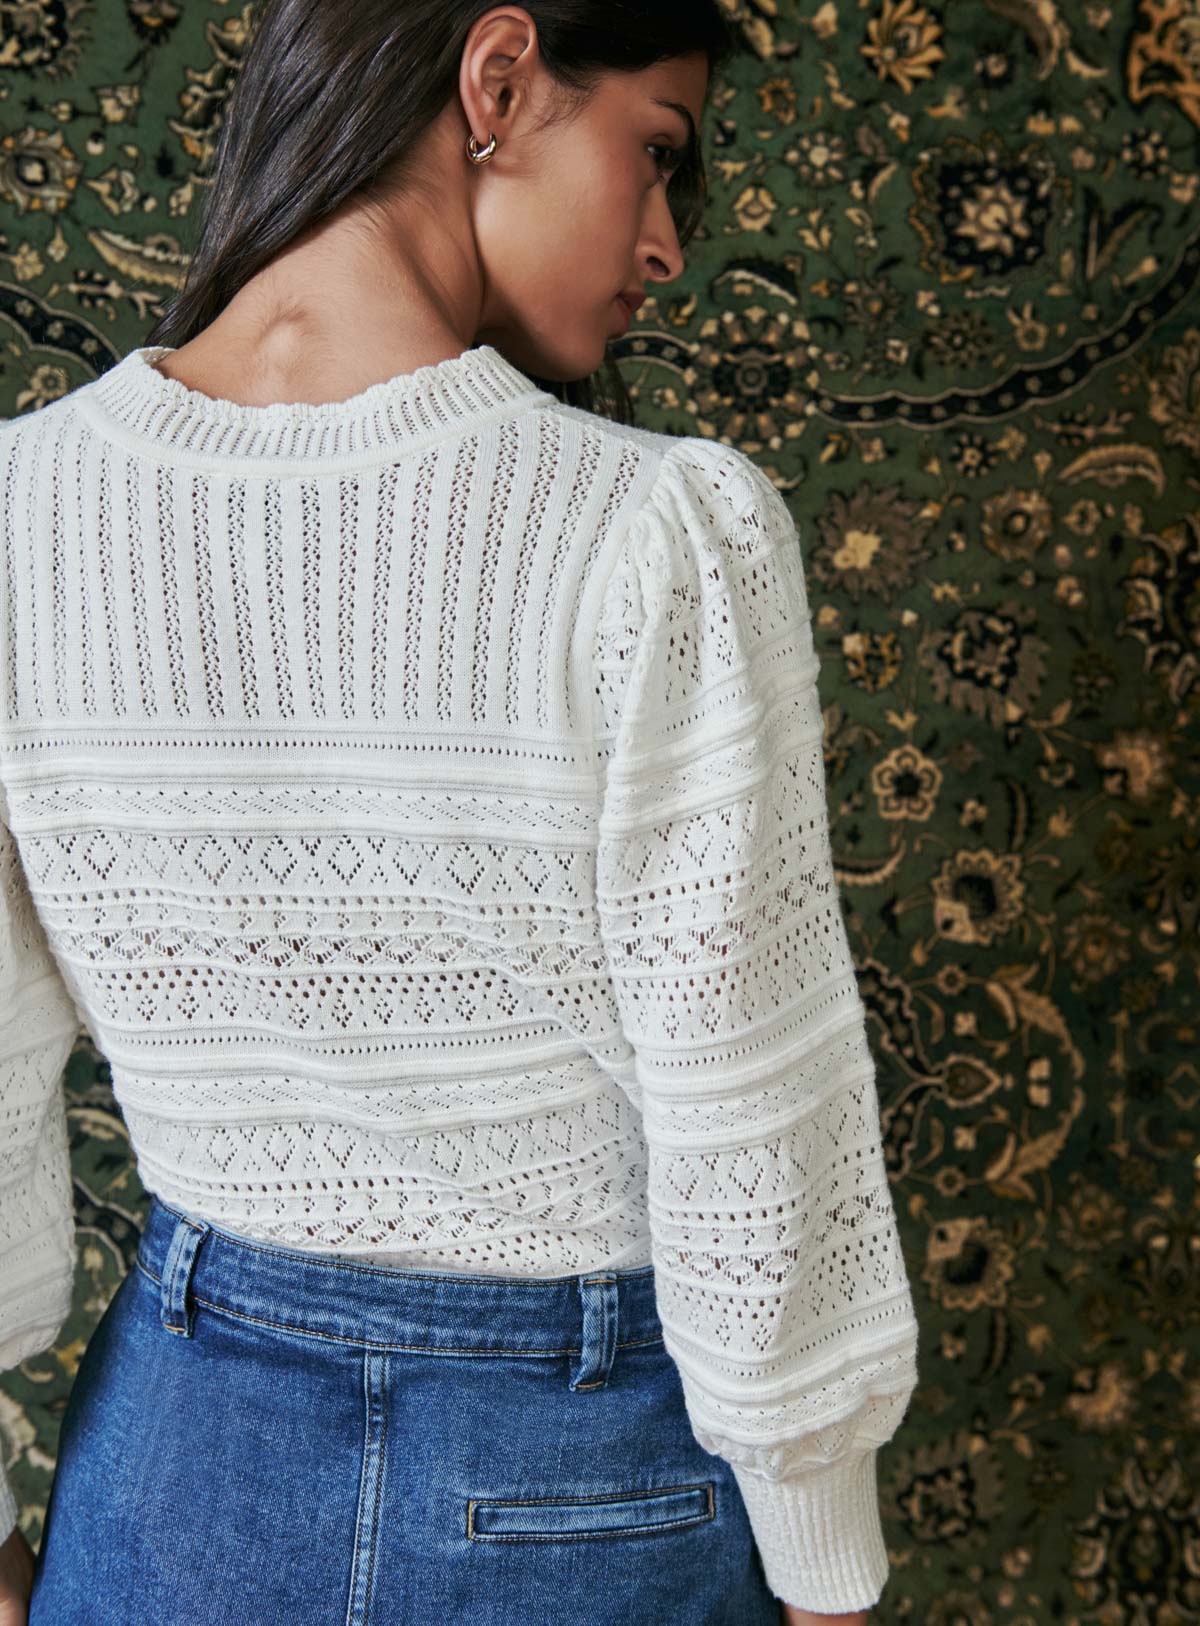 Milet sweater